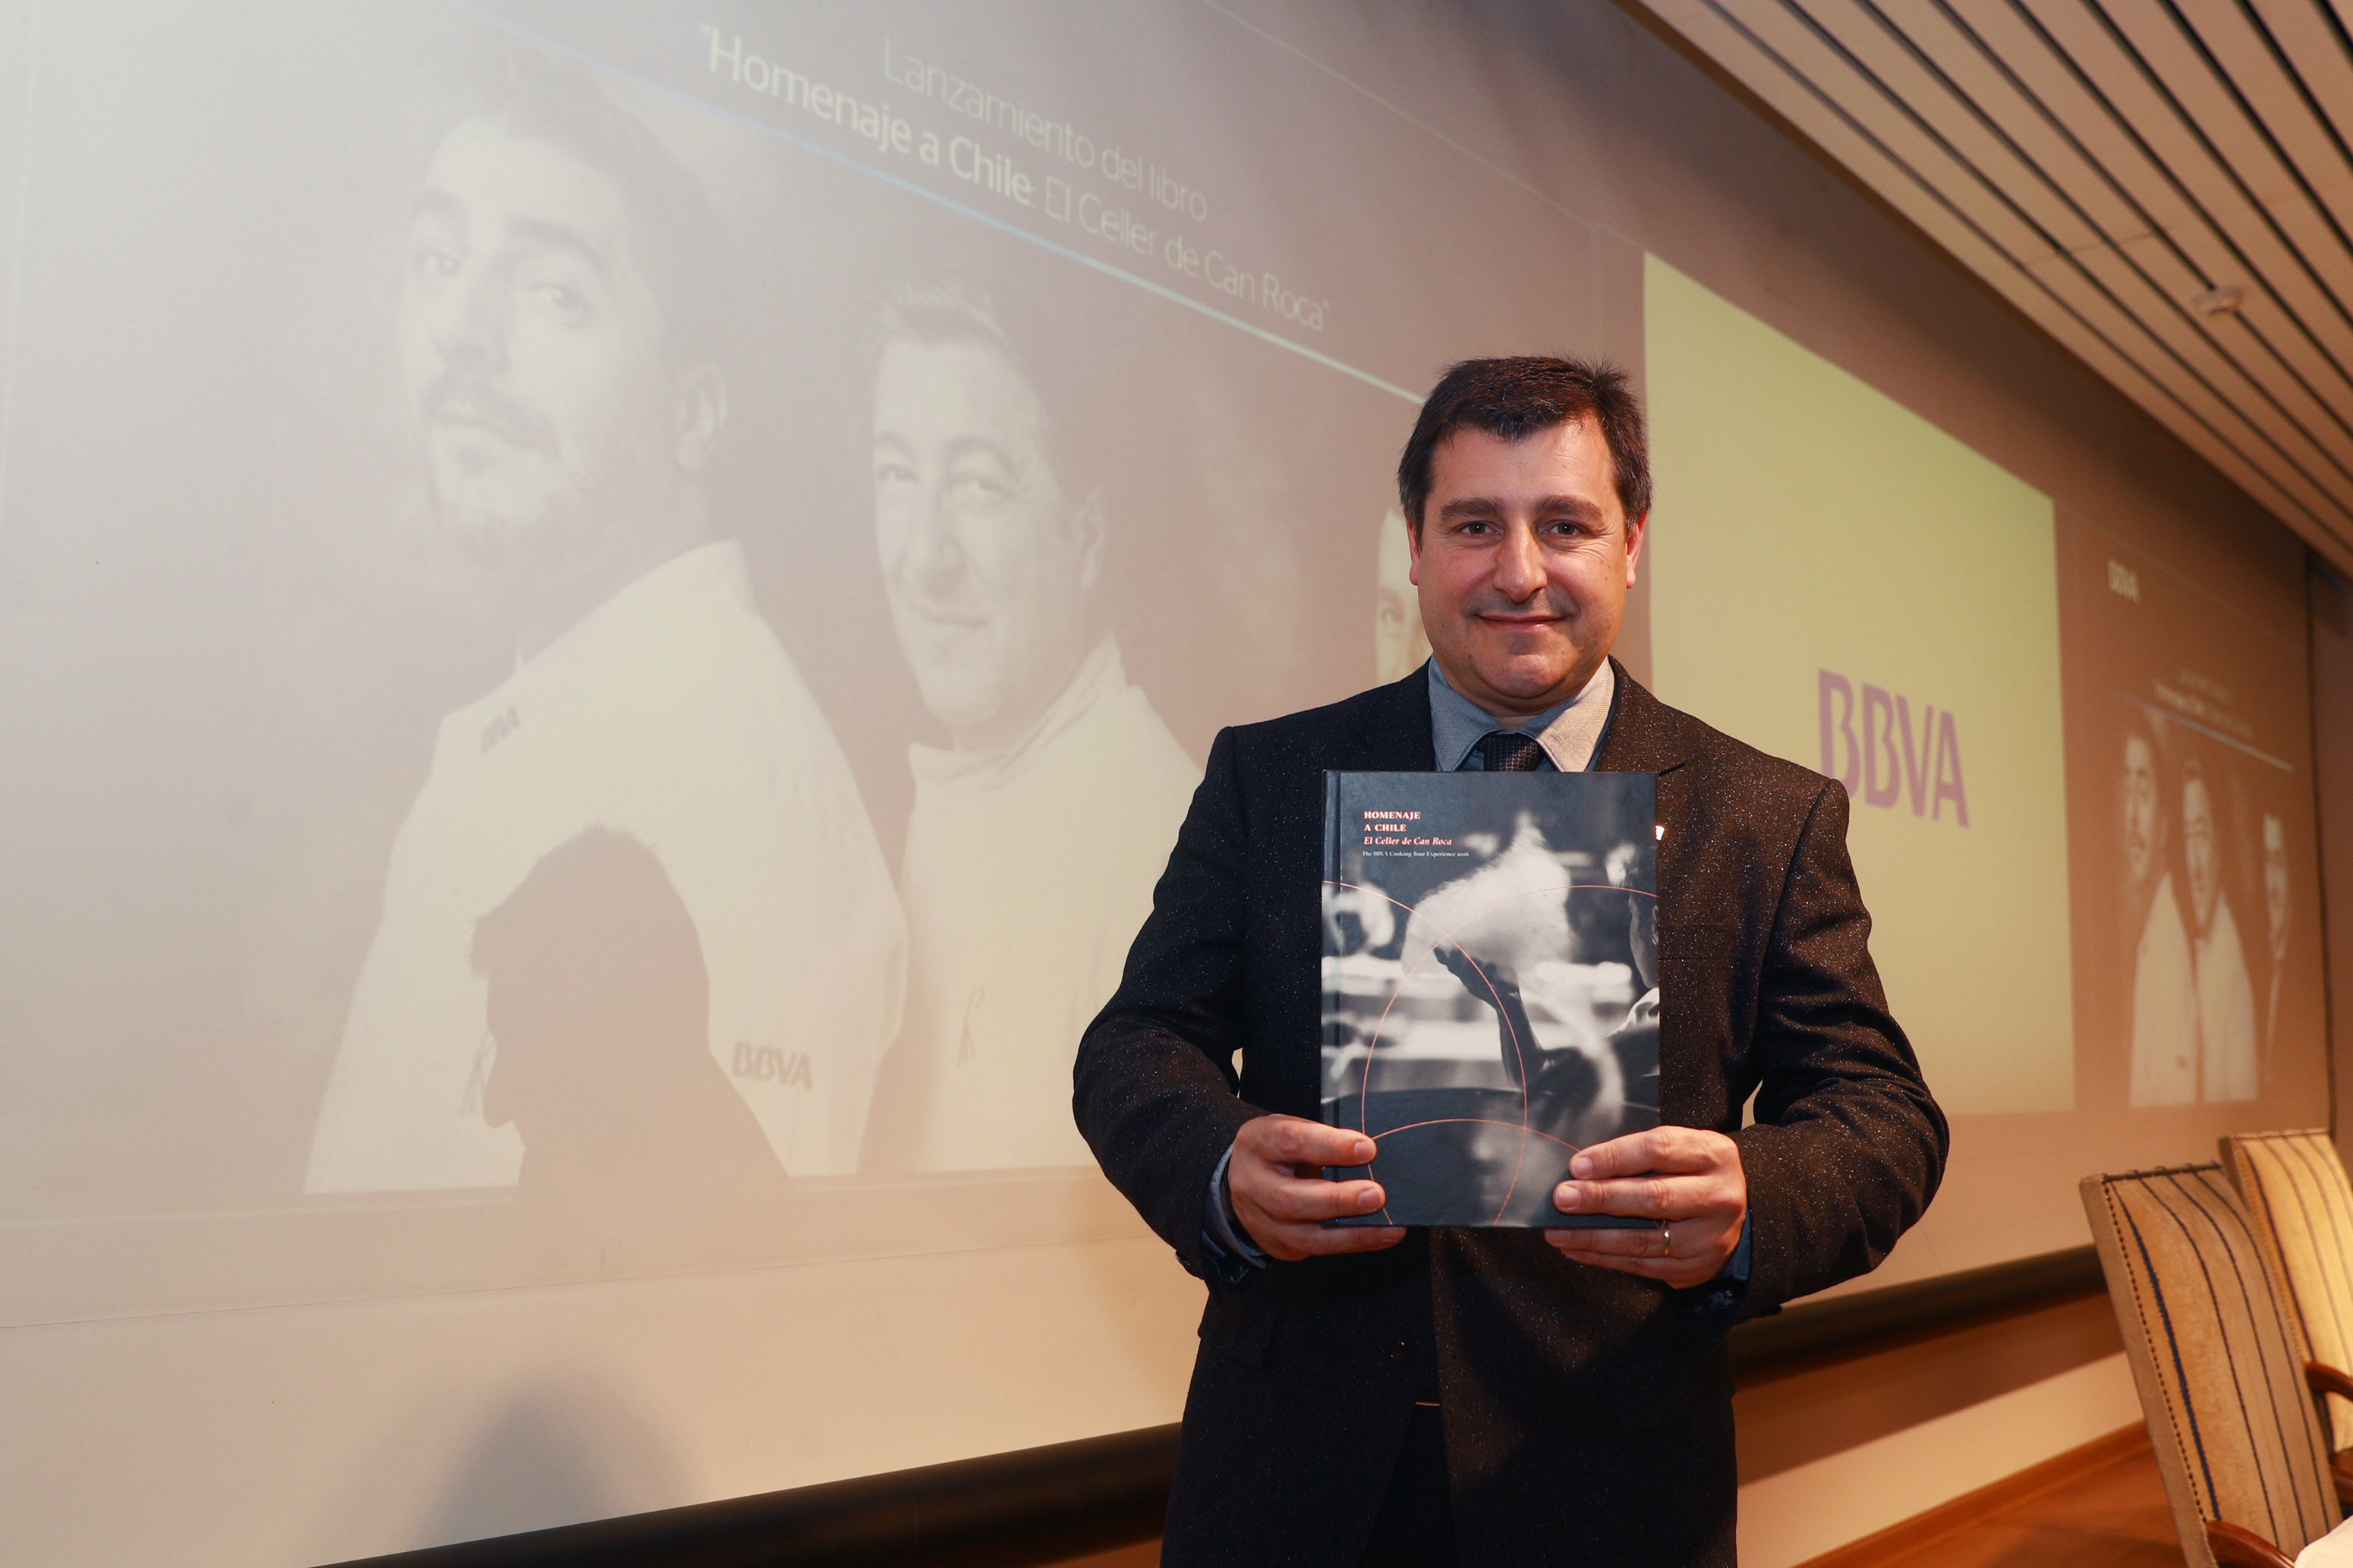 Josep Roca presenta libro en homenaje a Chile